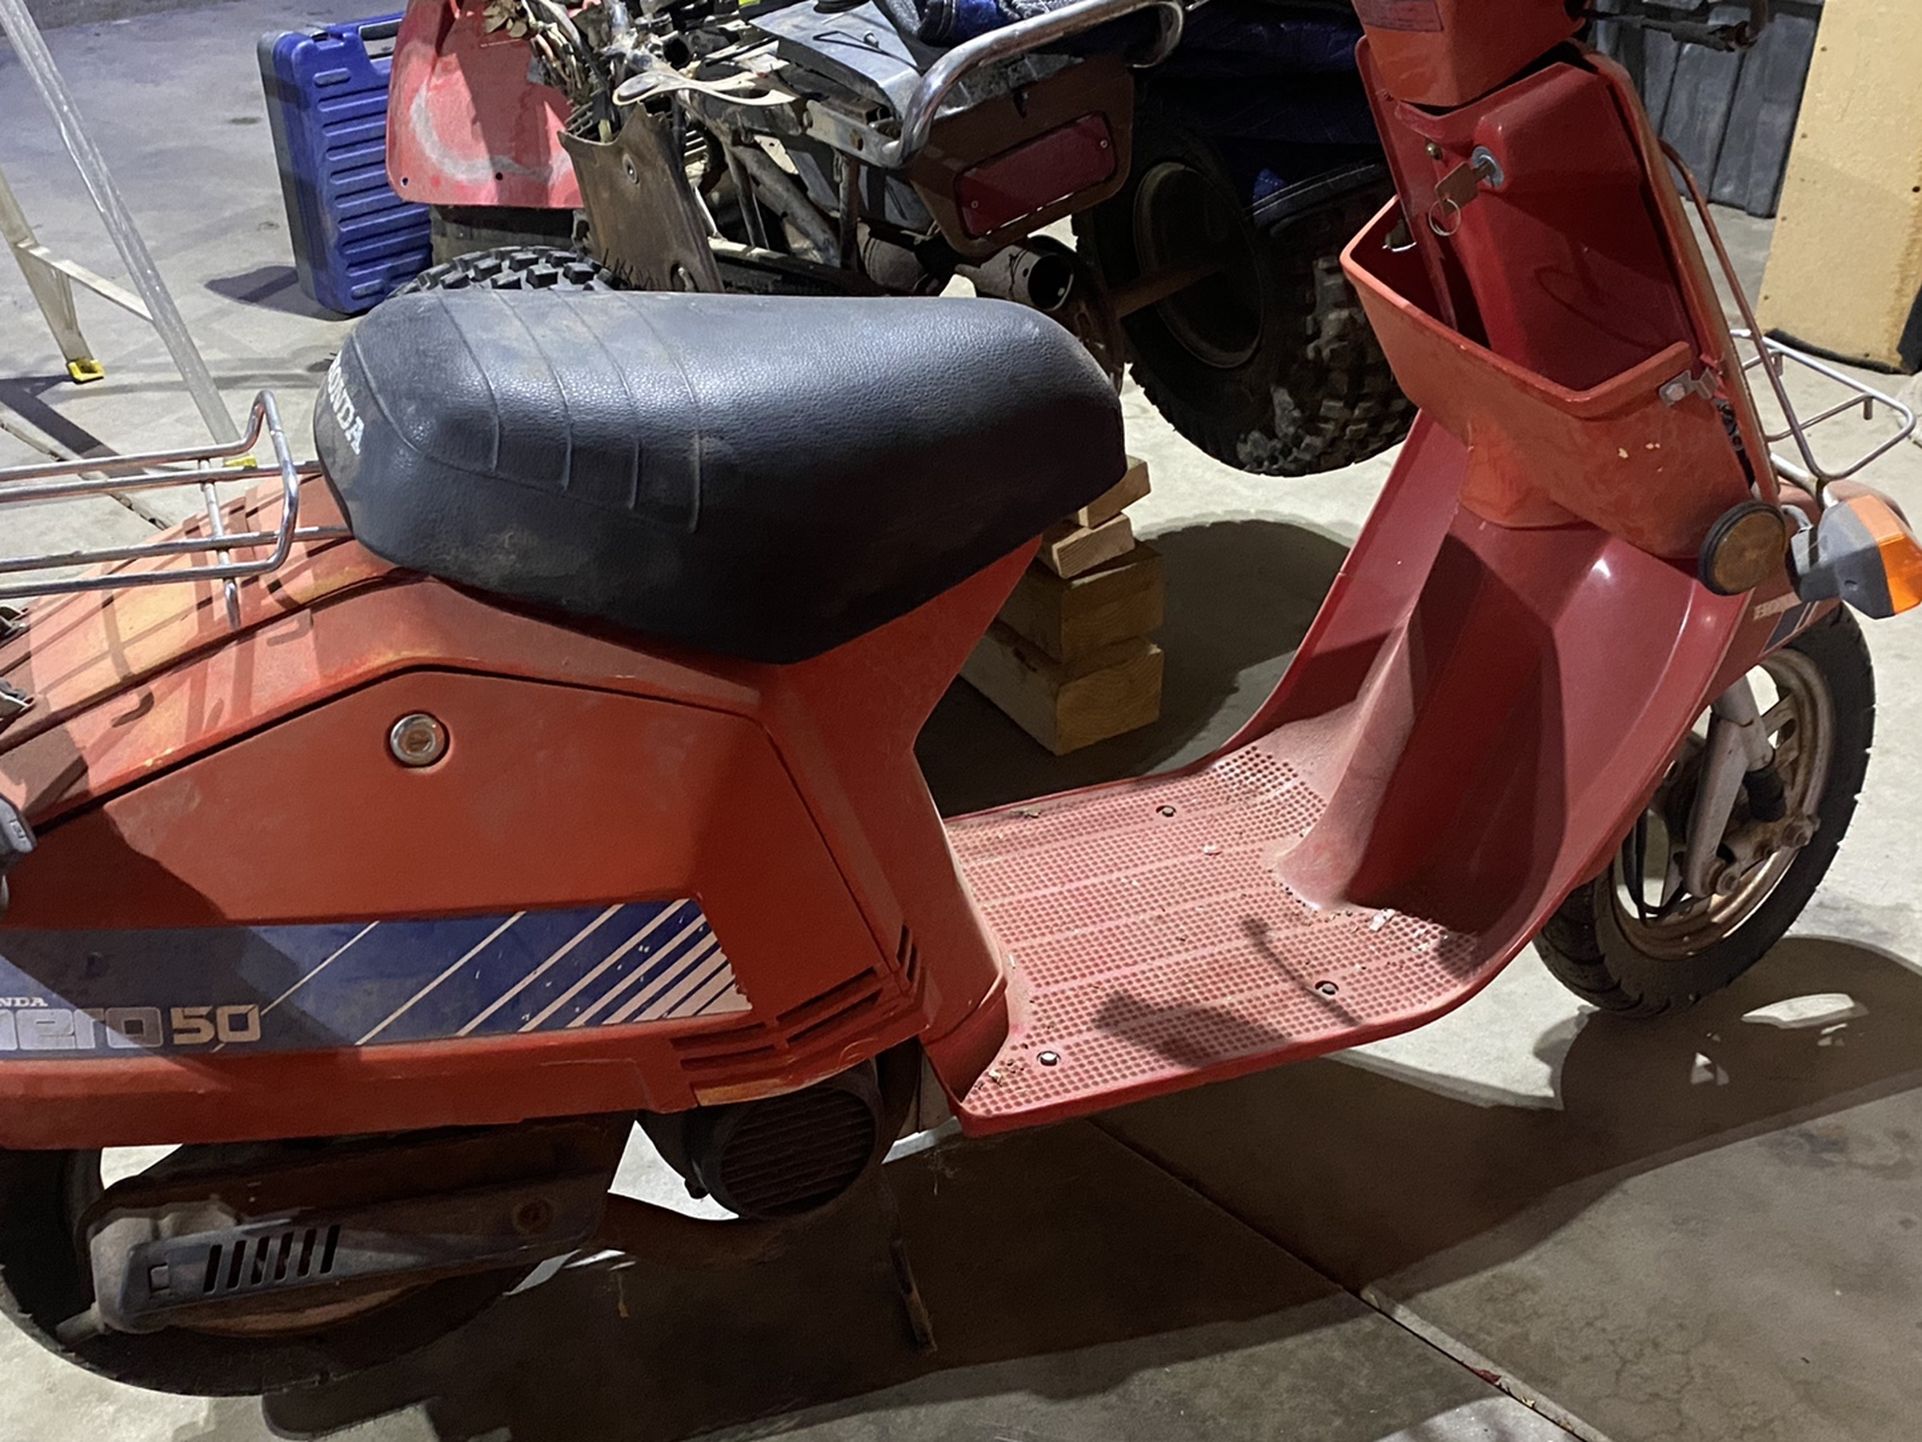 Honda Moped